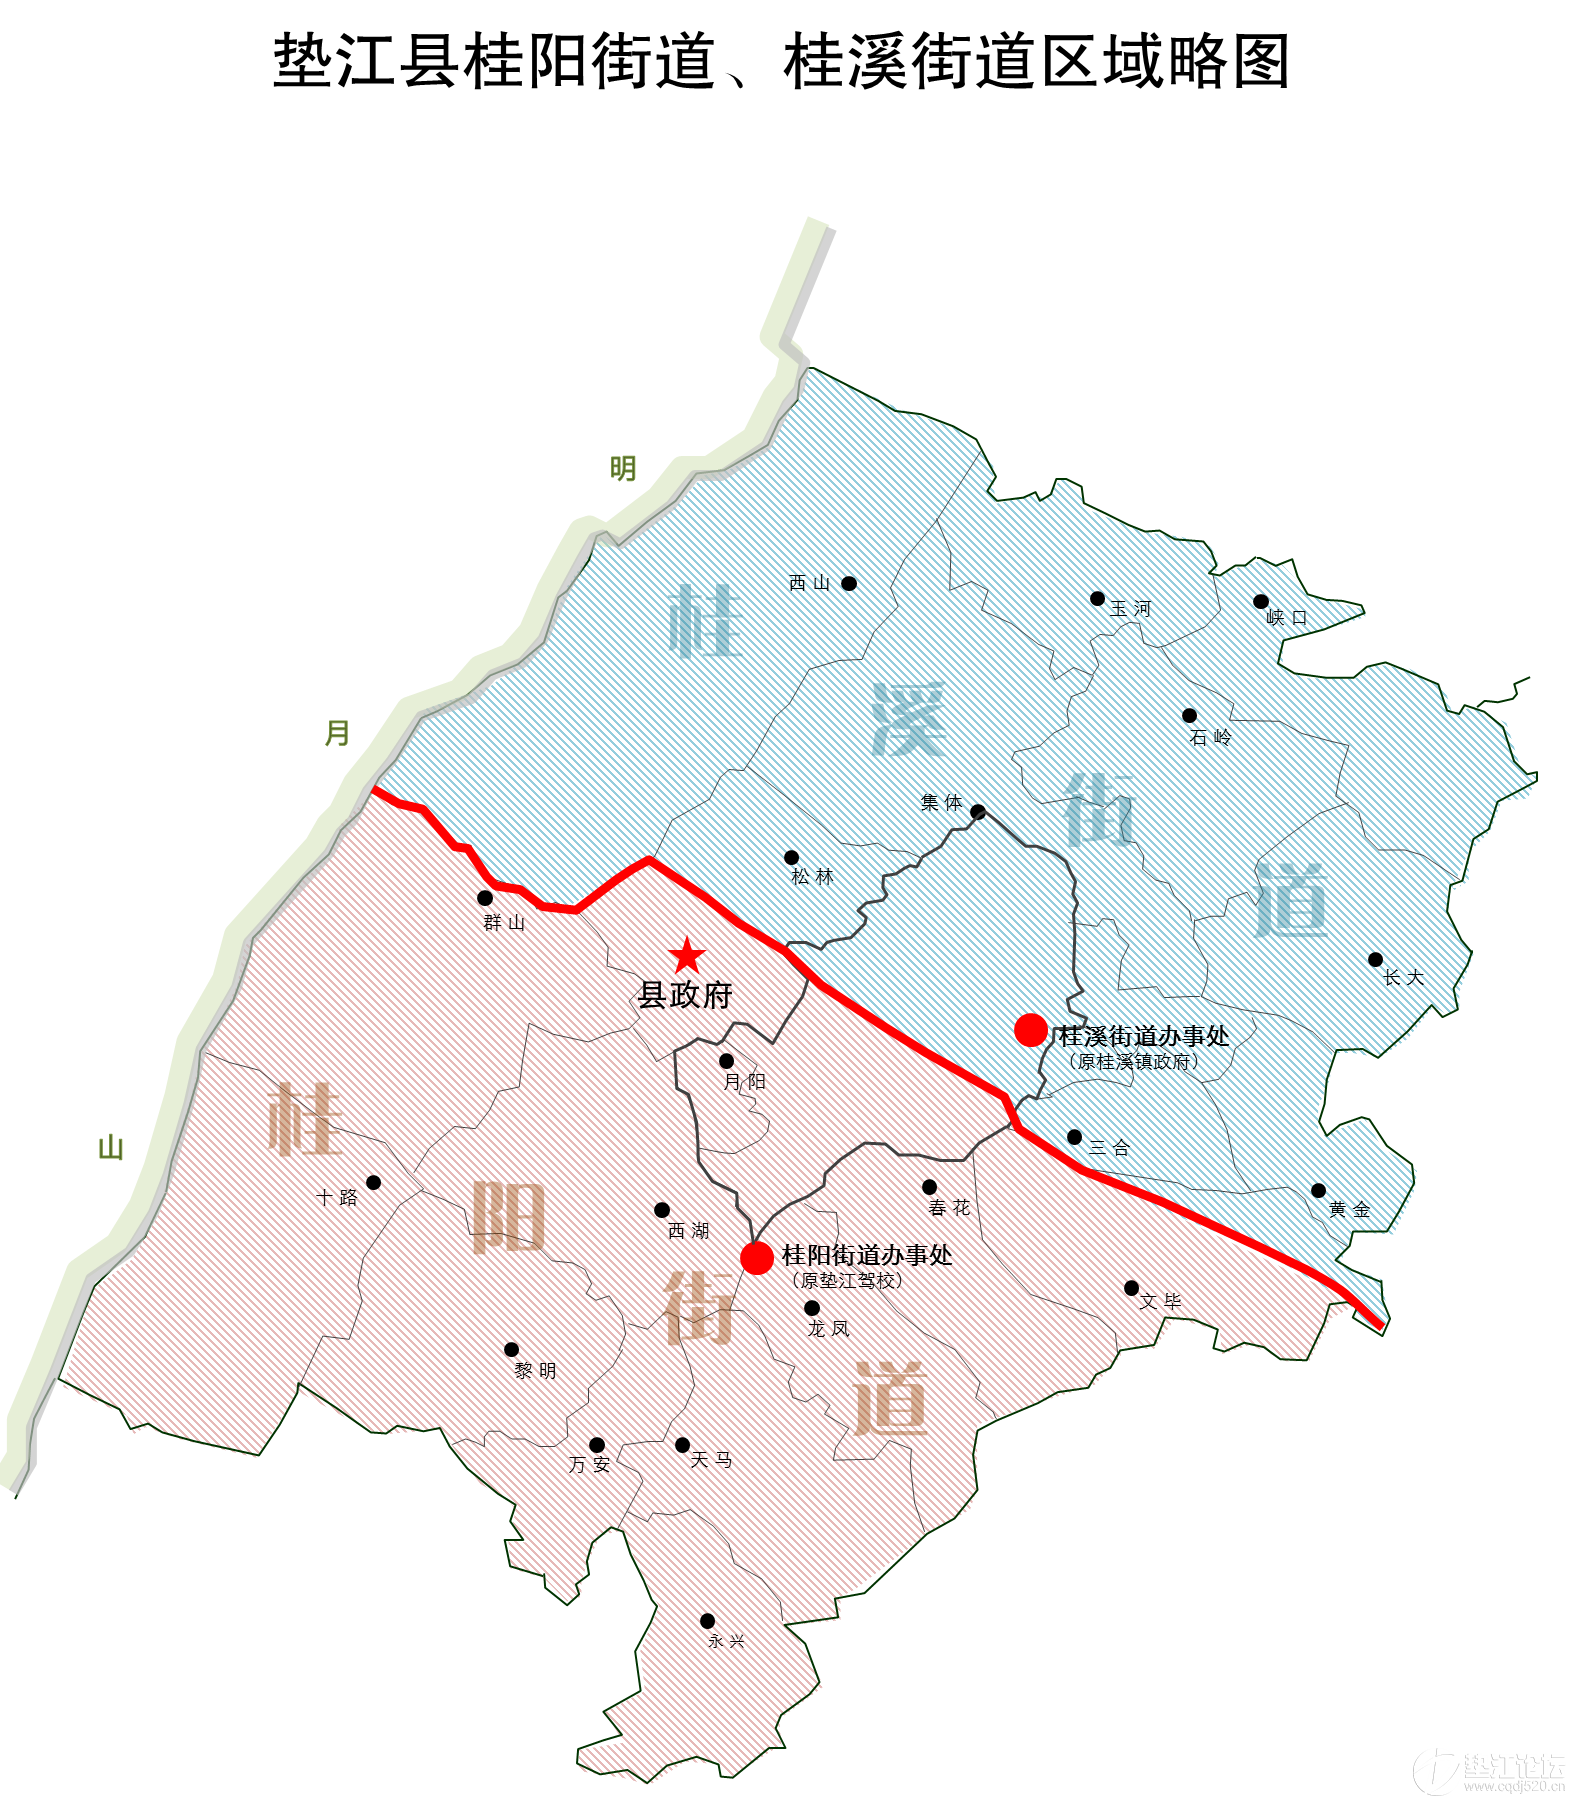 垫江县桂阳街,桂溪街道区域划分图